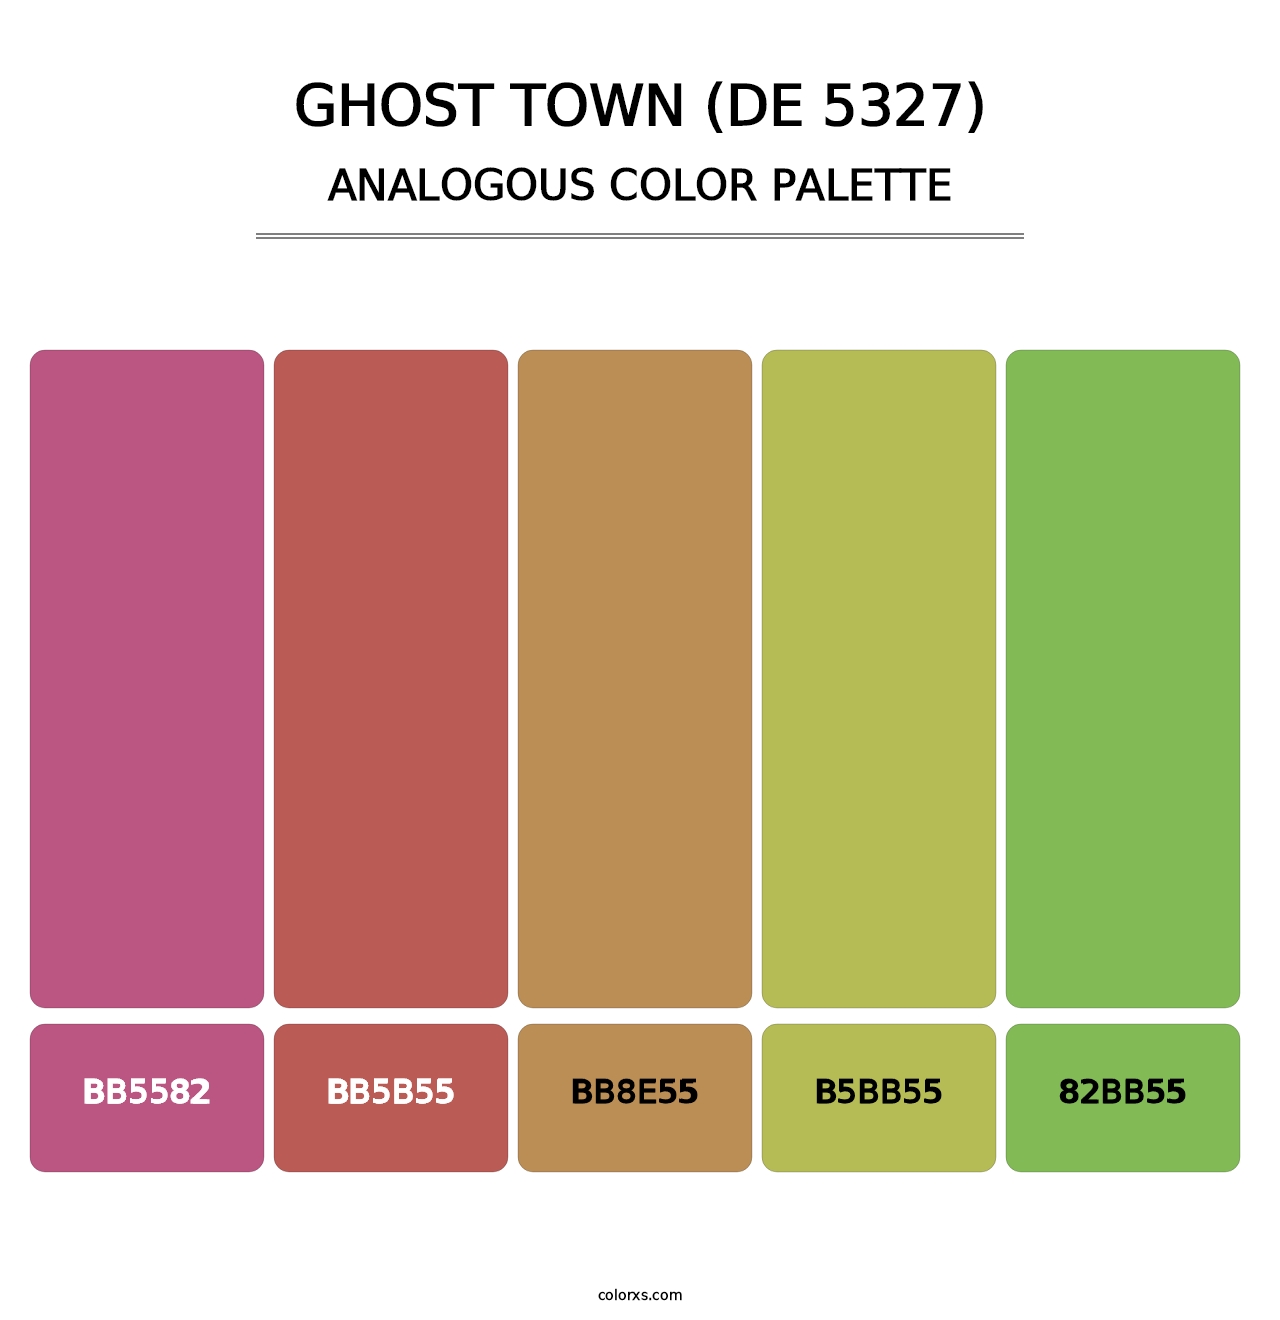 Ghost Town (DE 5327) - Analogous Color Palette